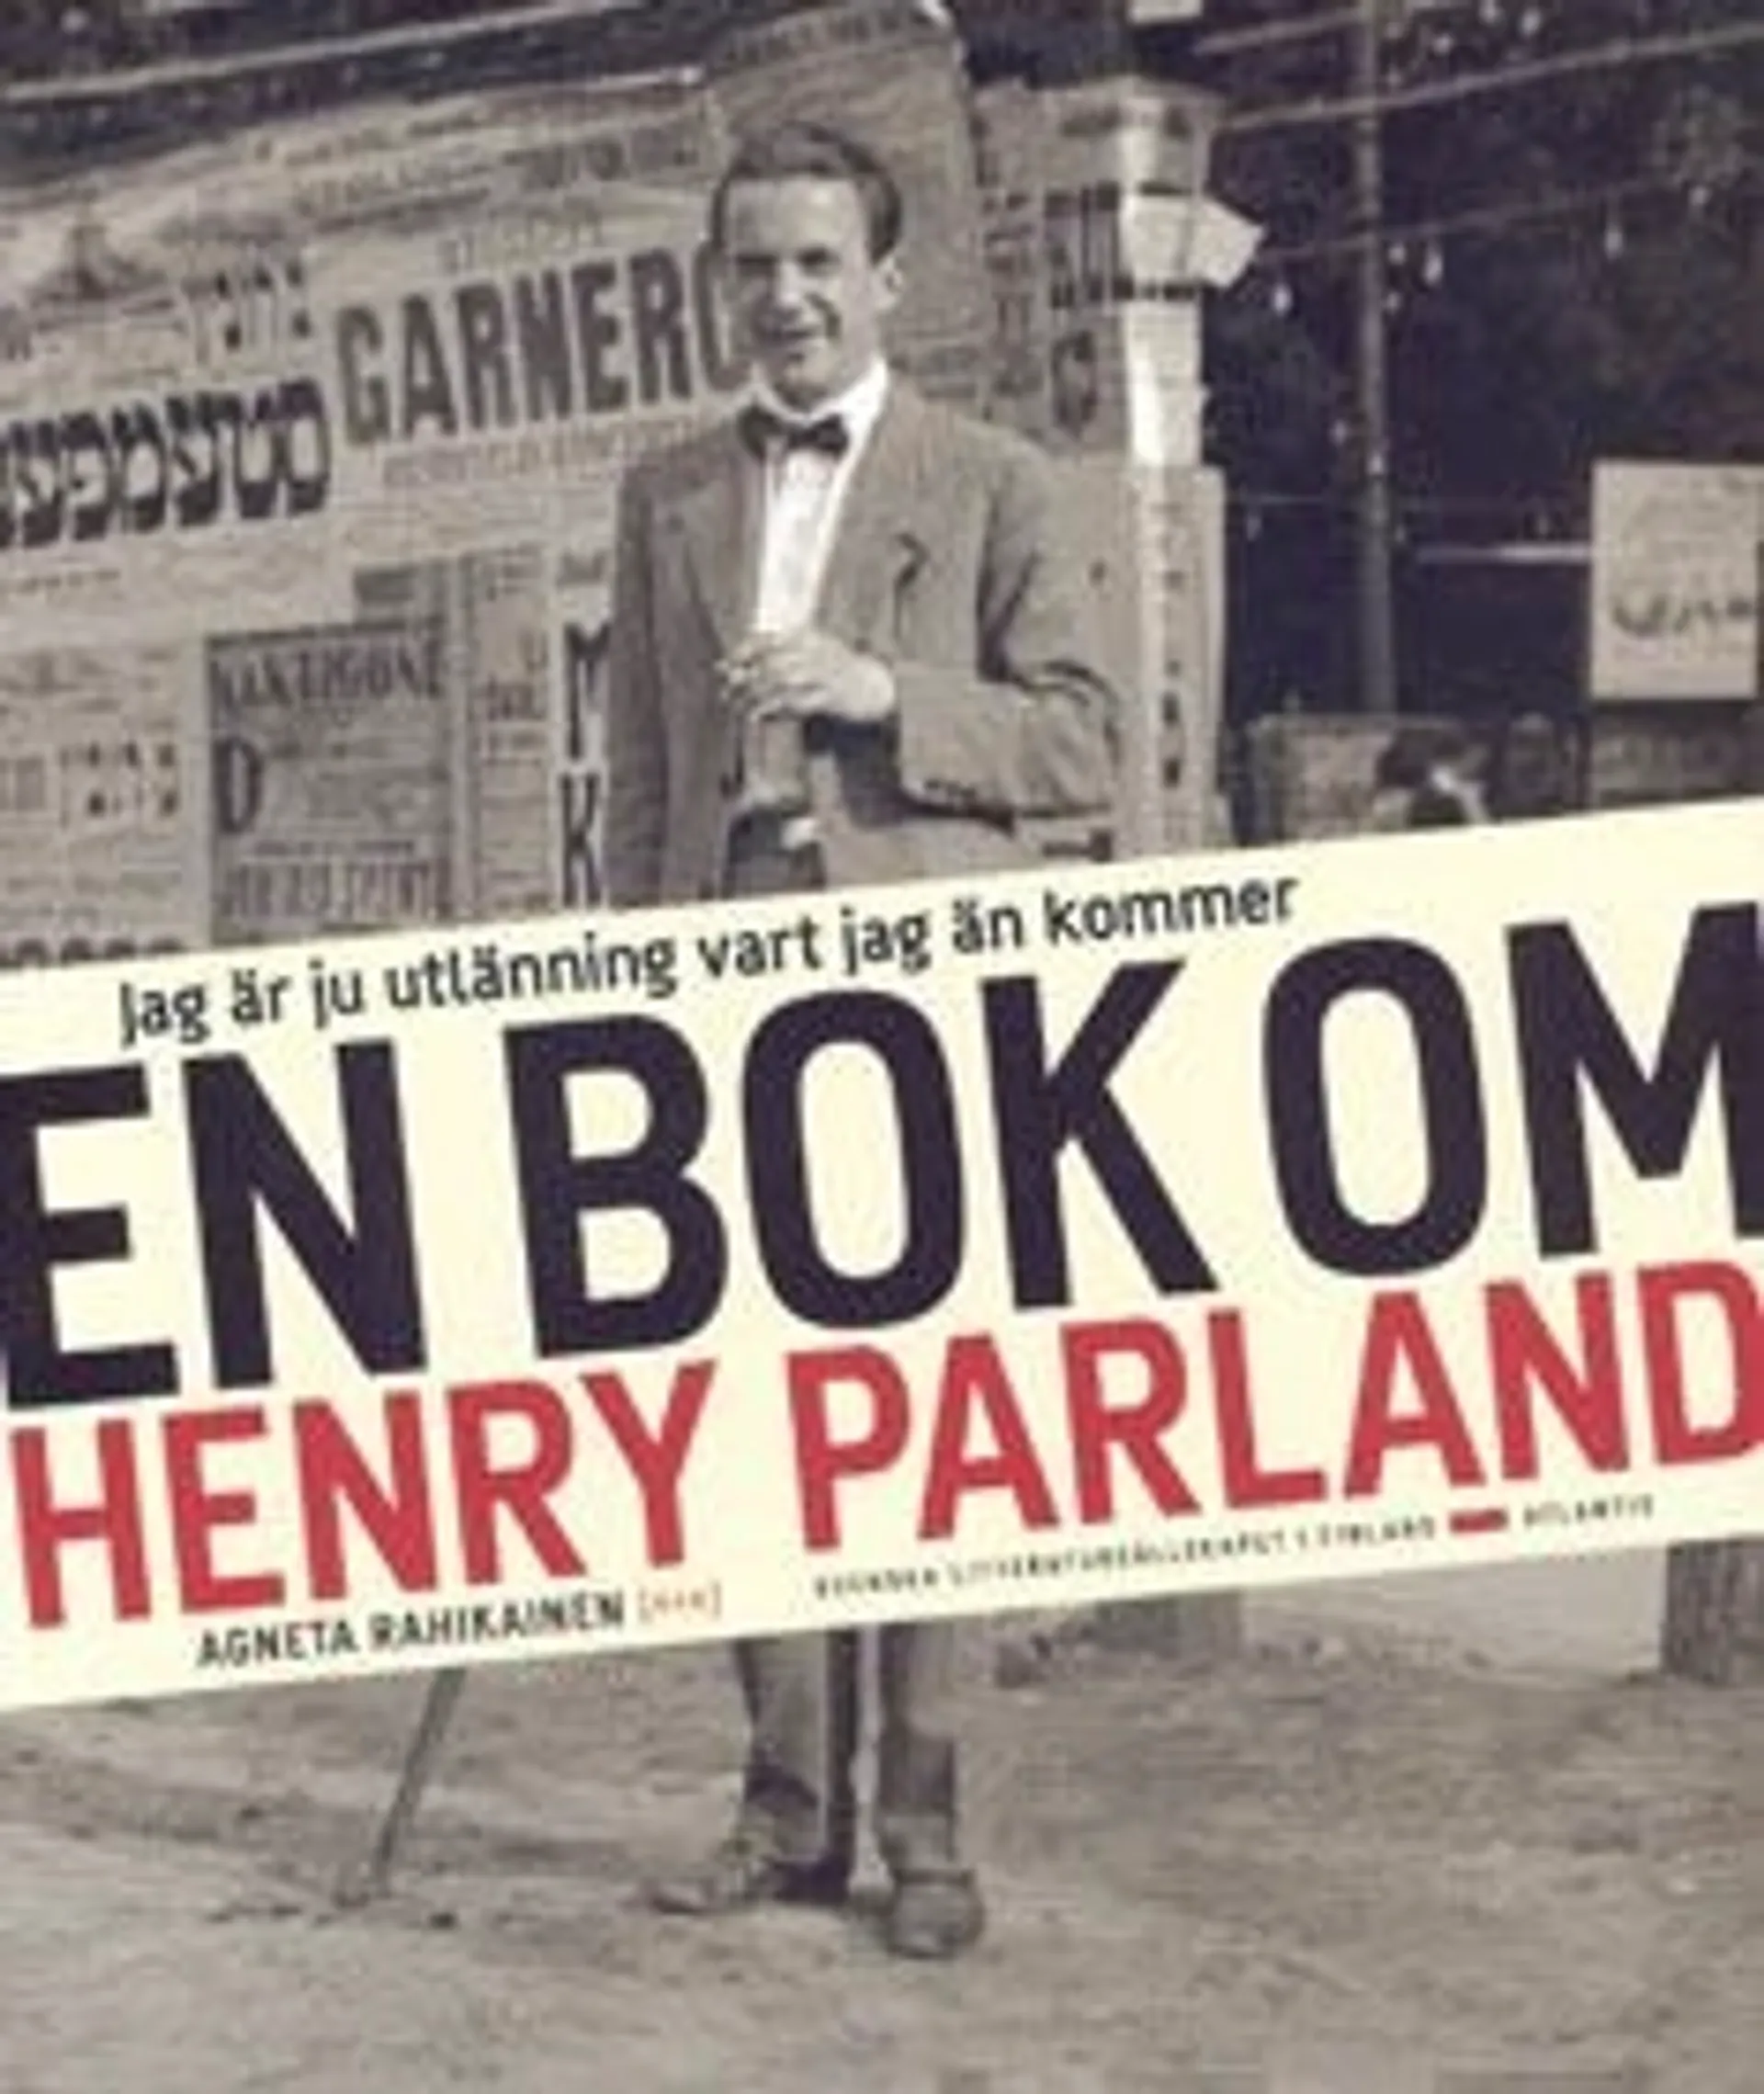 Jag är ju utlänning vart jag än kommer - en bok om Henry Parland